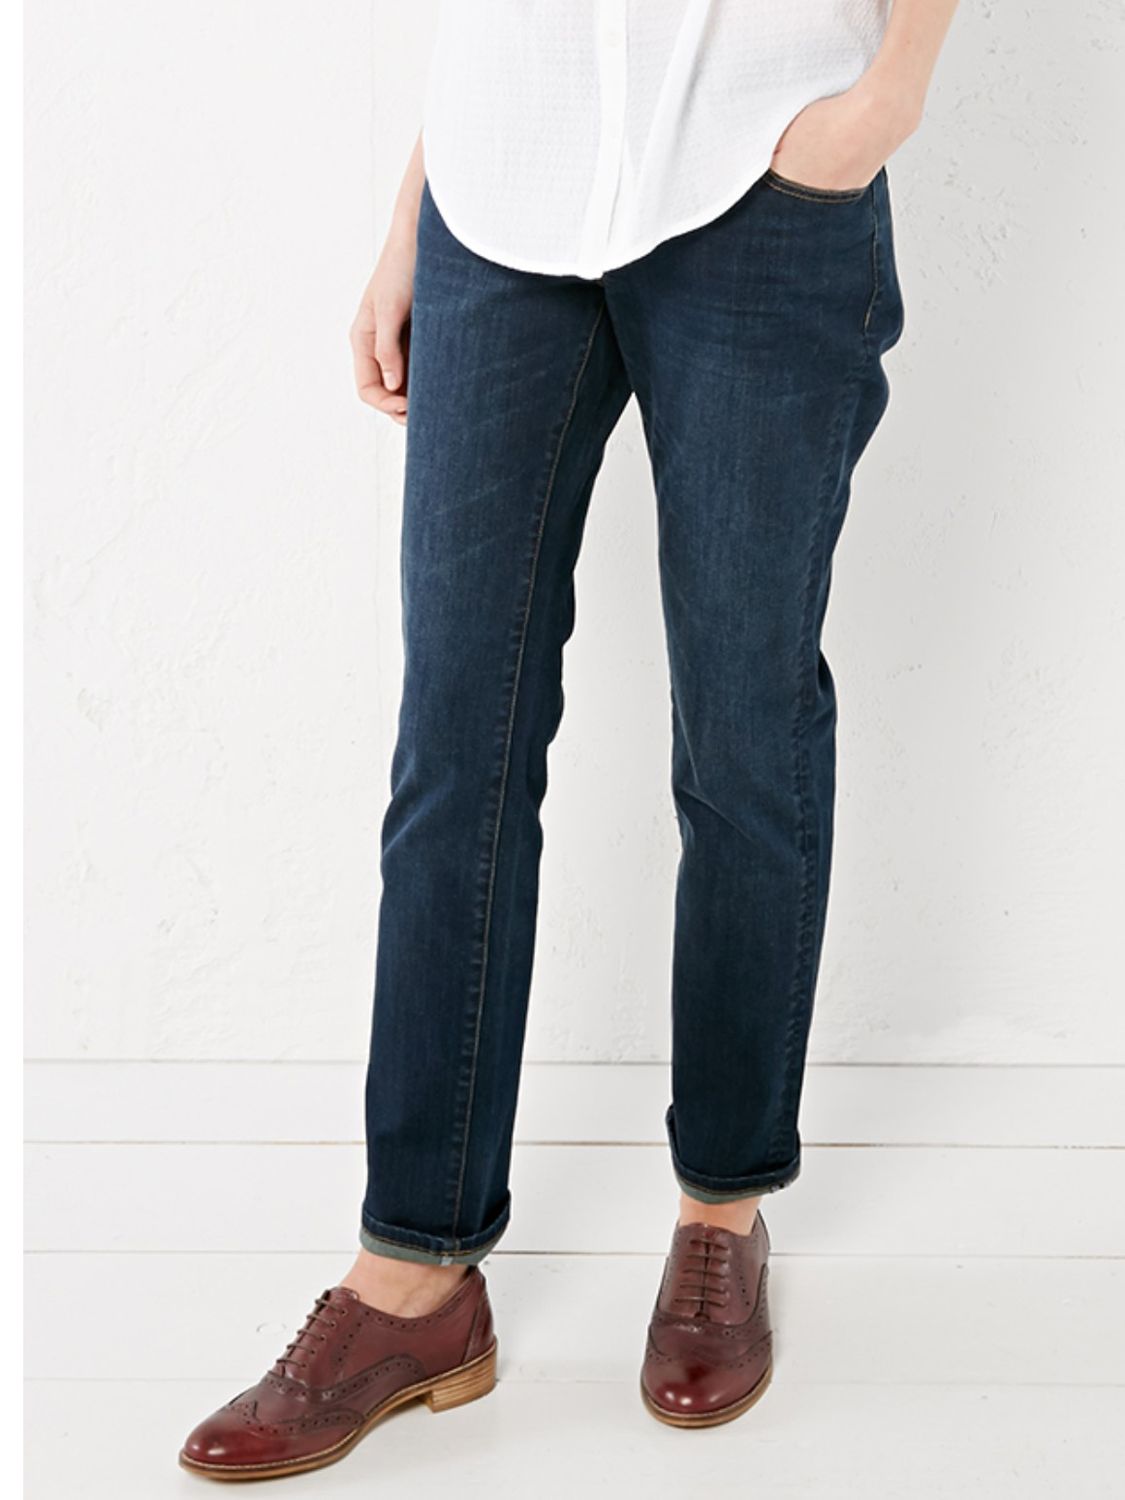 white stuff straight leg jeans